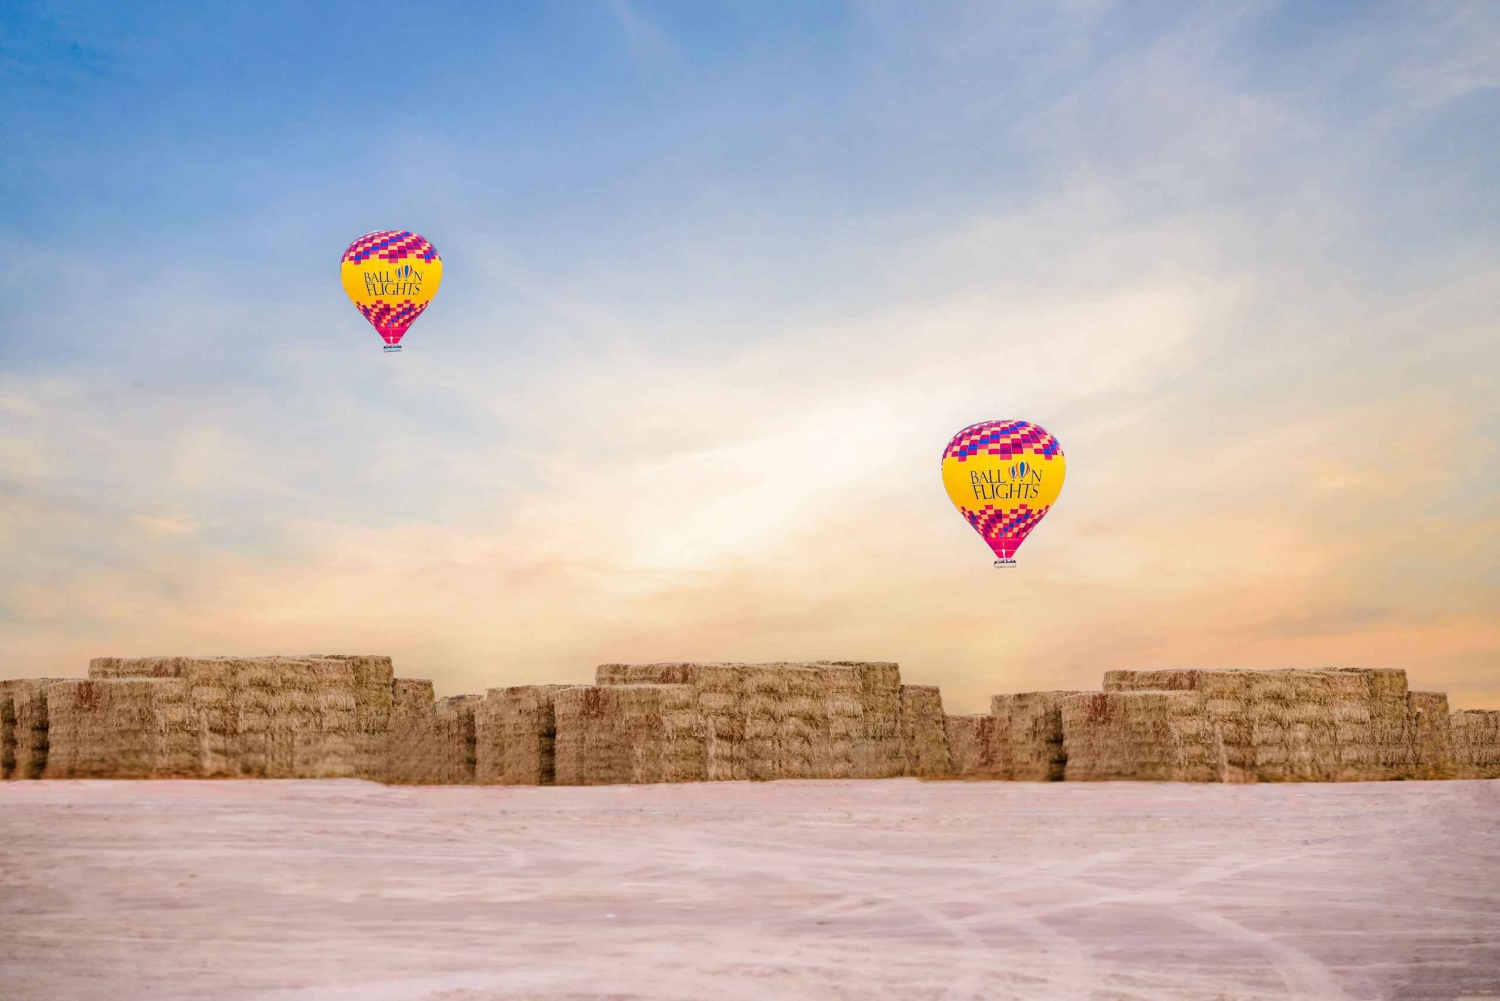 Dubai: Sunrise Hot Air Balloon Trip with Buffet Breakfast